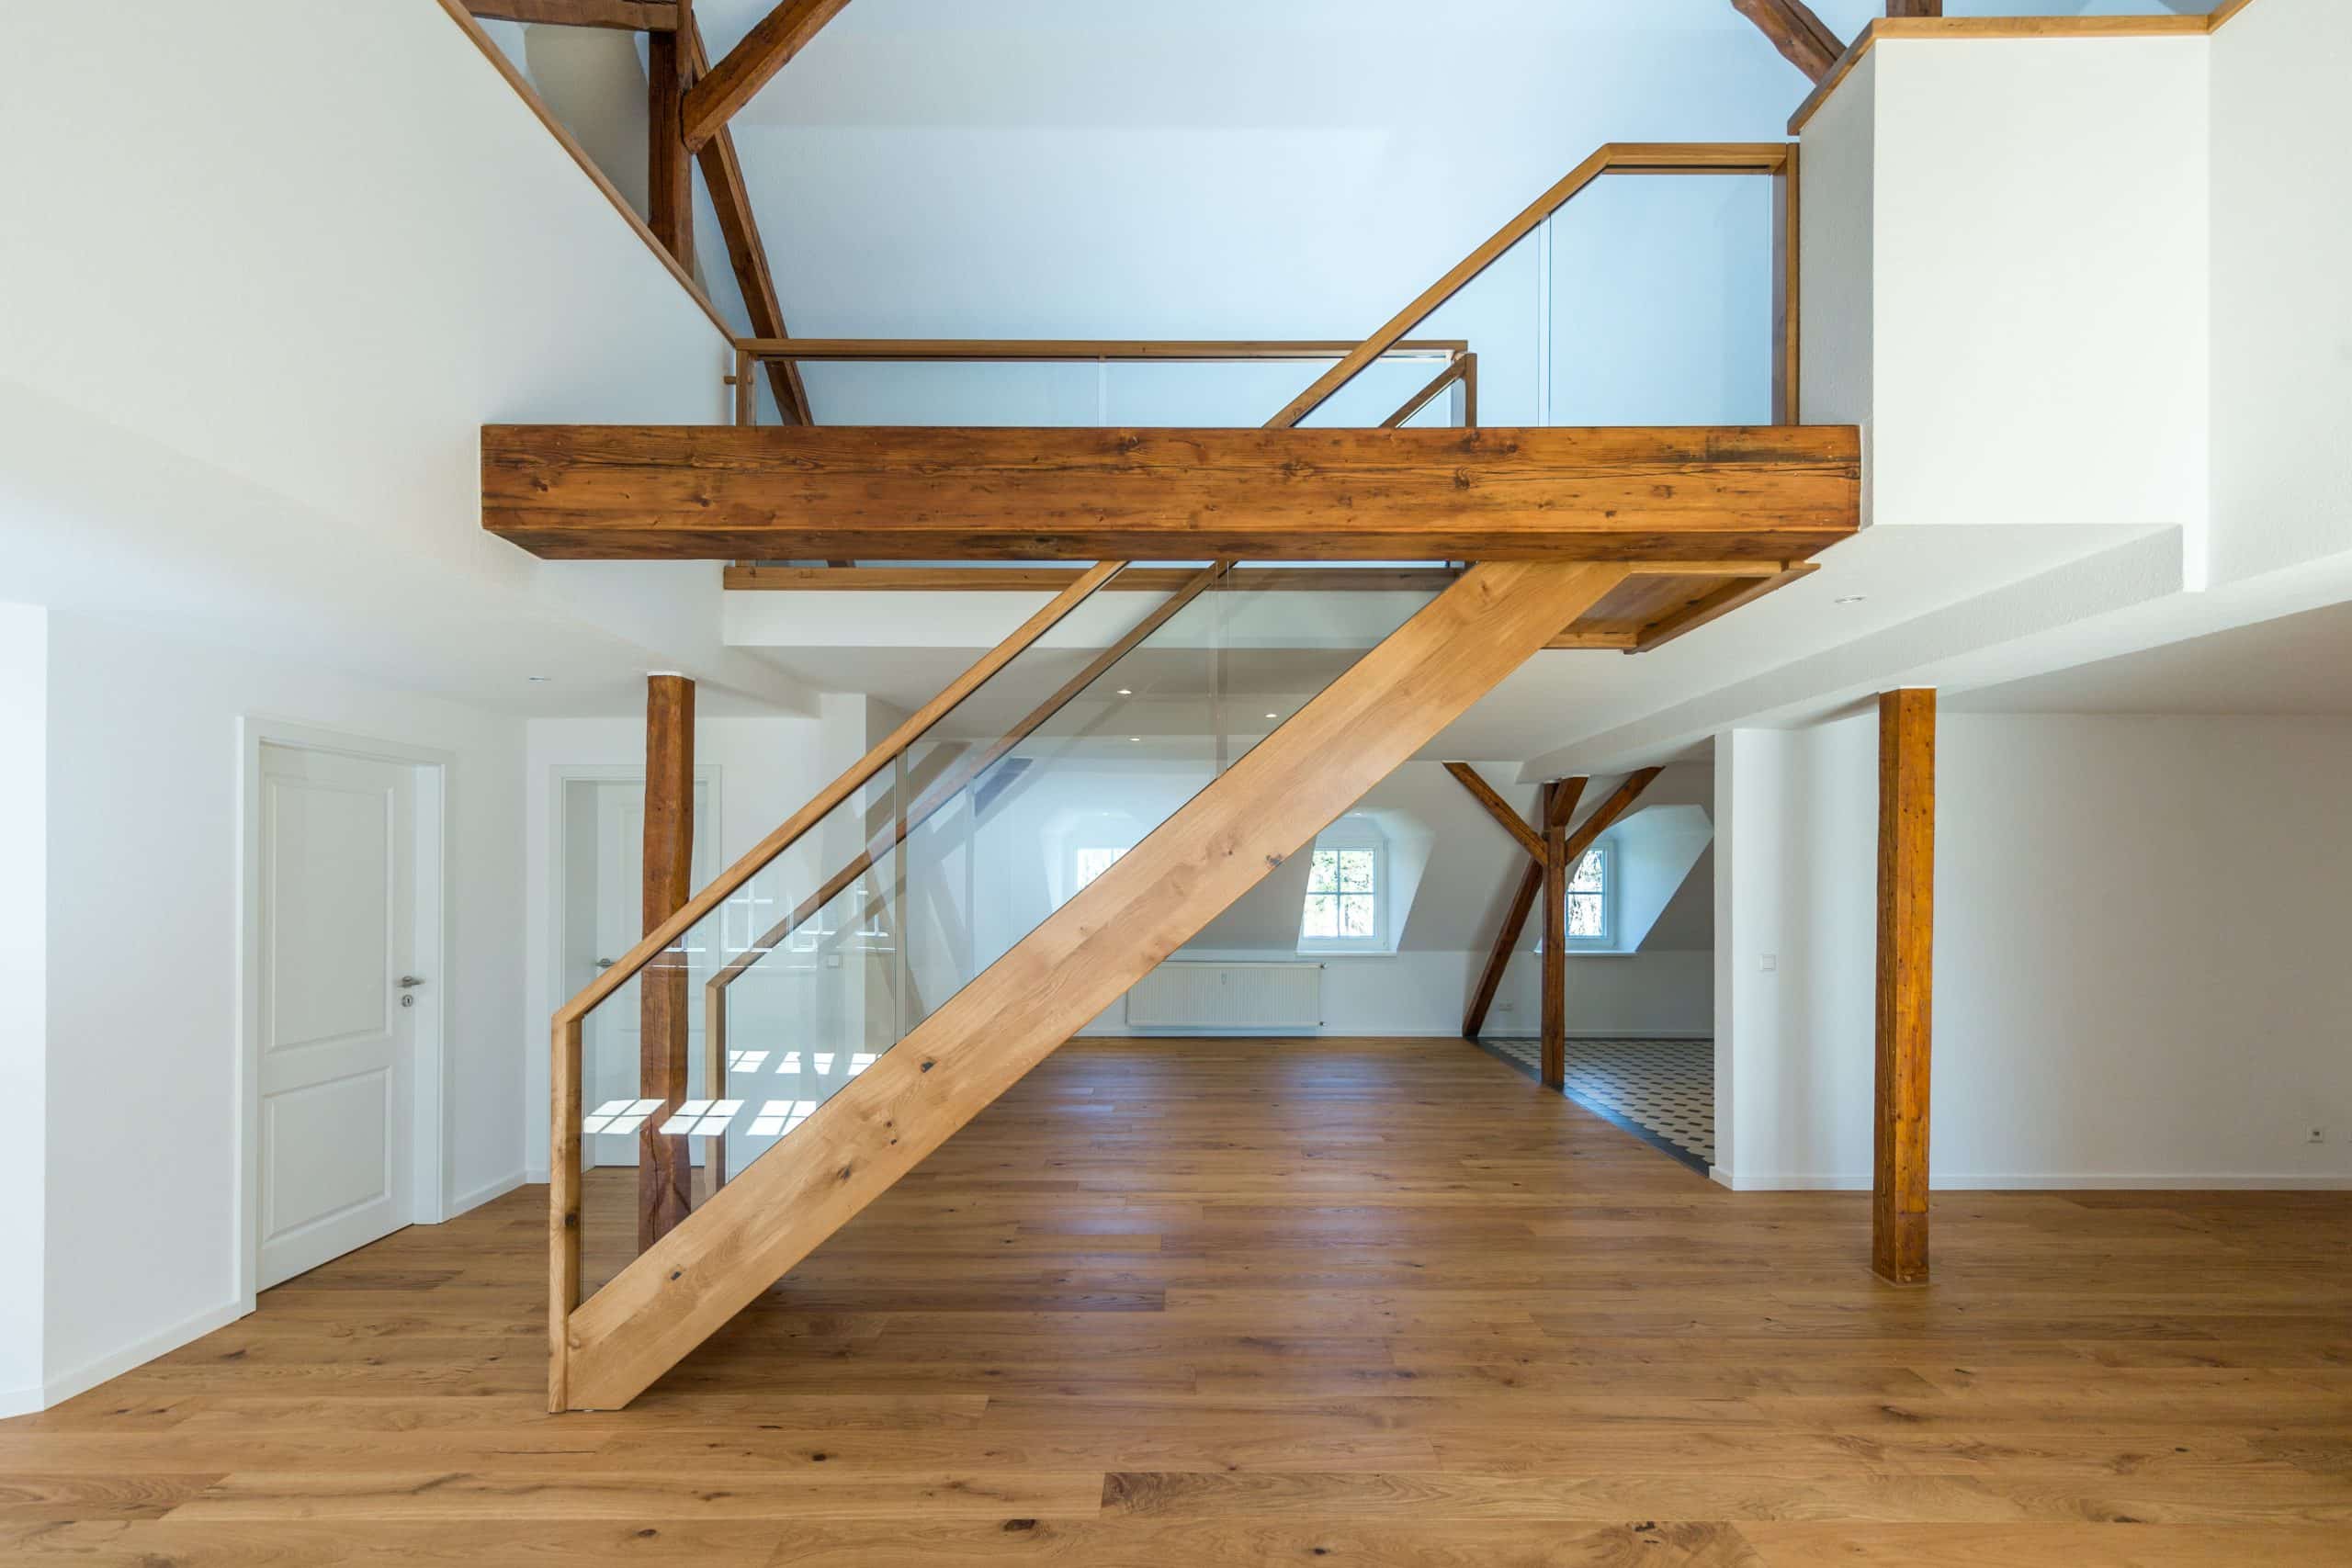 Treppenmeister präsentiert einen modernen Treppenaufgang ins Dachgeschoß, in einem großen lichtdurchfluteten Raum mit Glasgeländer und dazu passendem Holzboden.